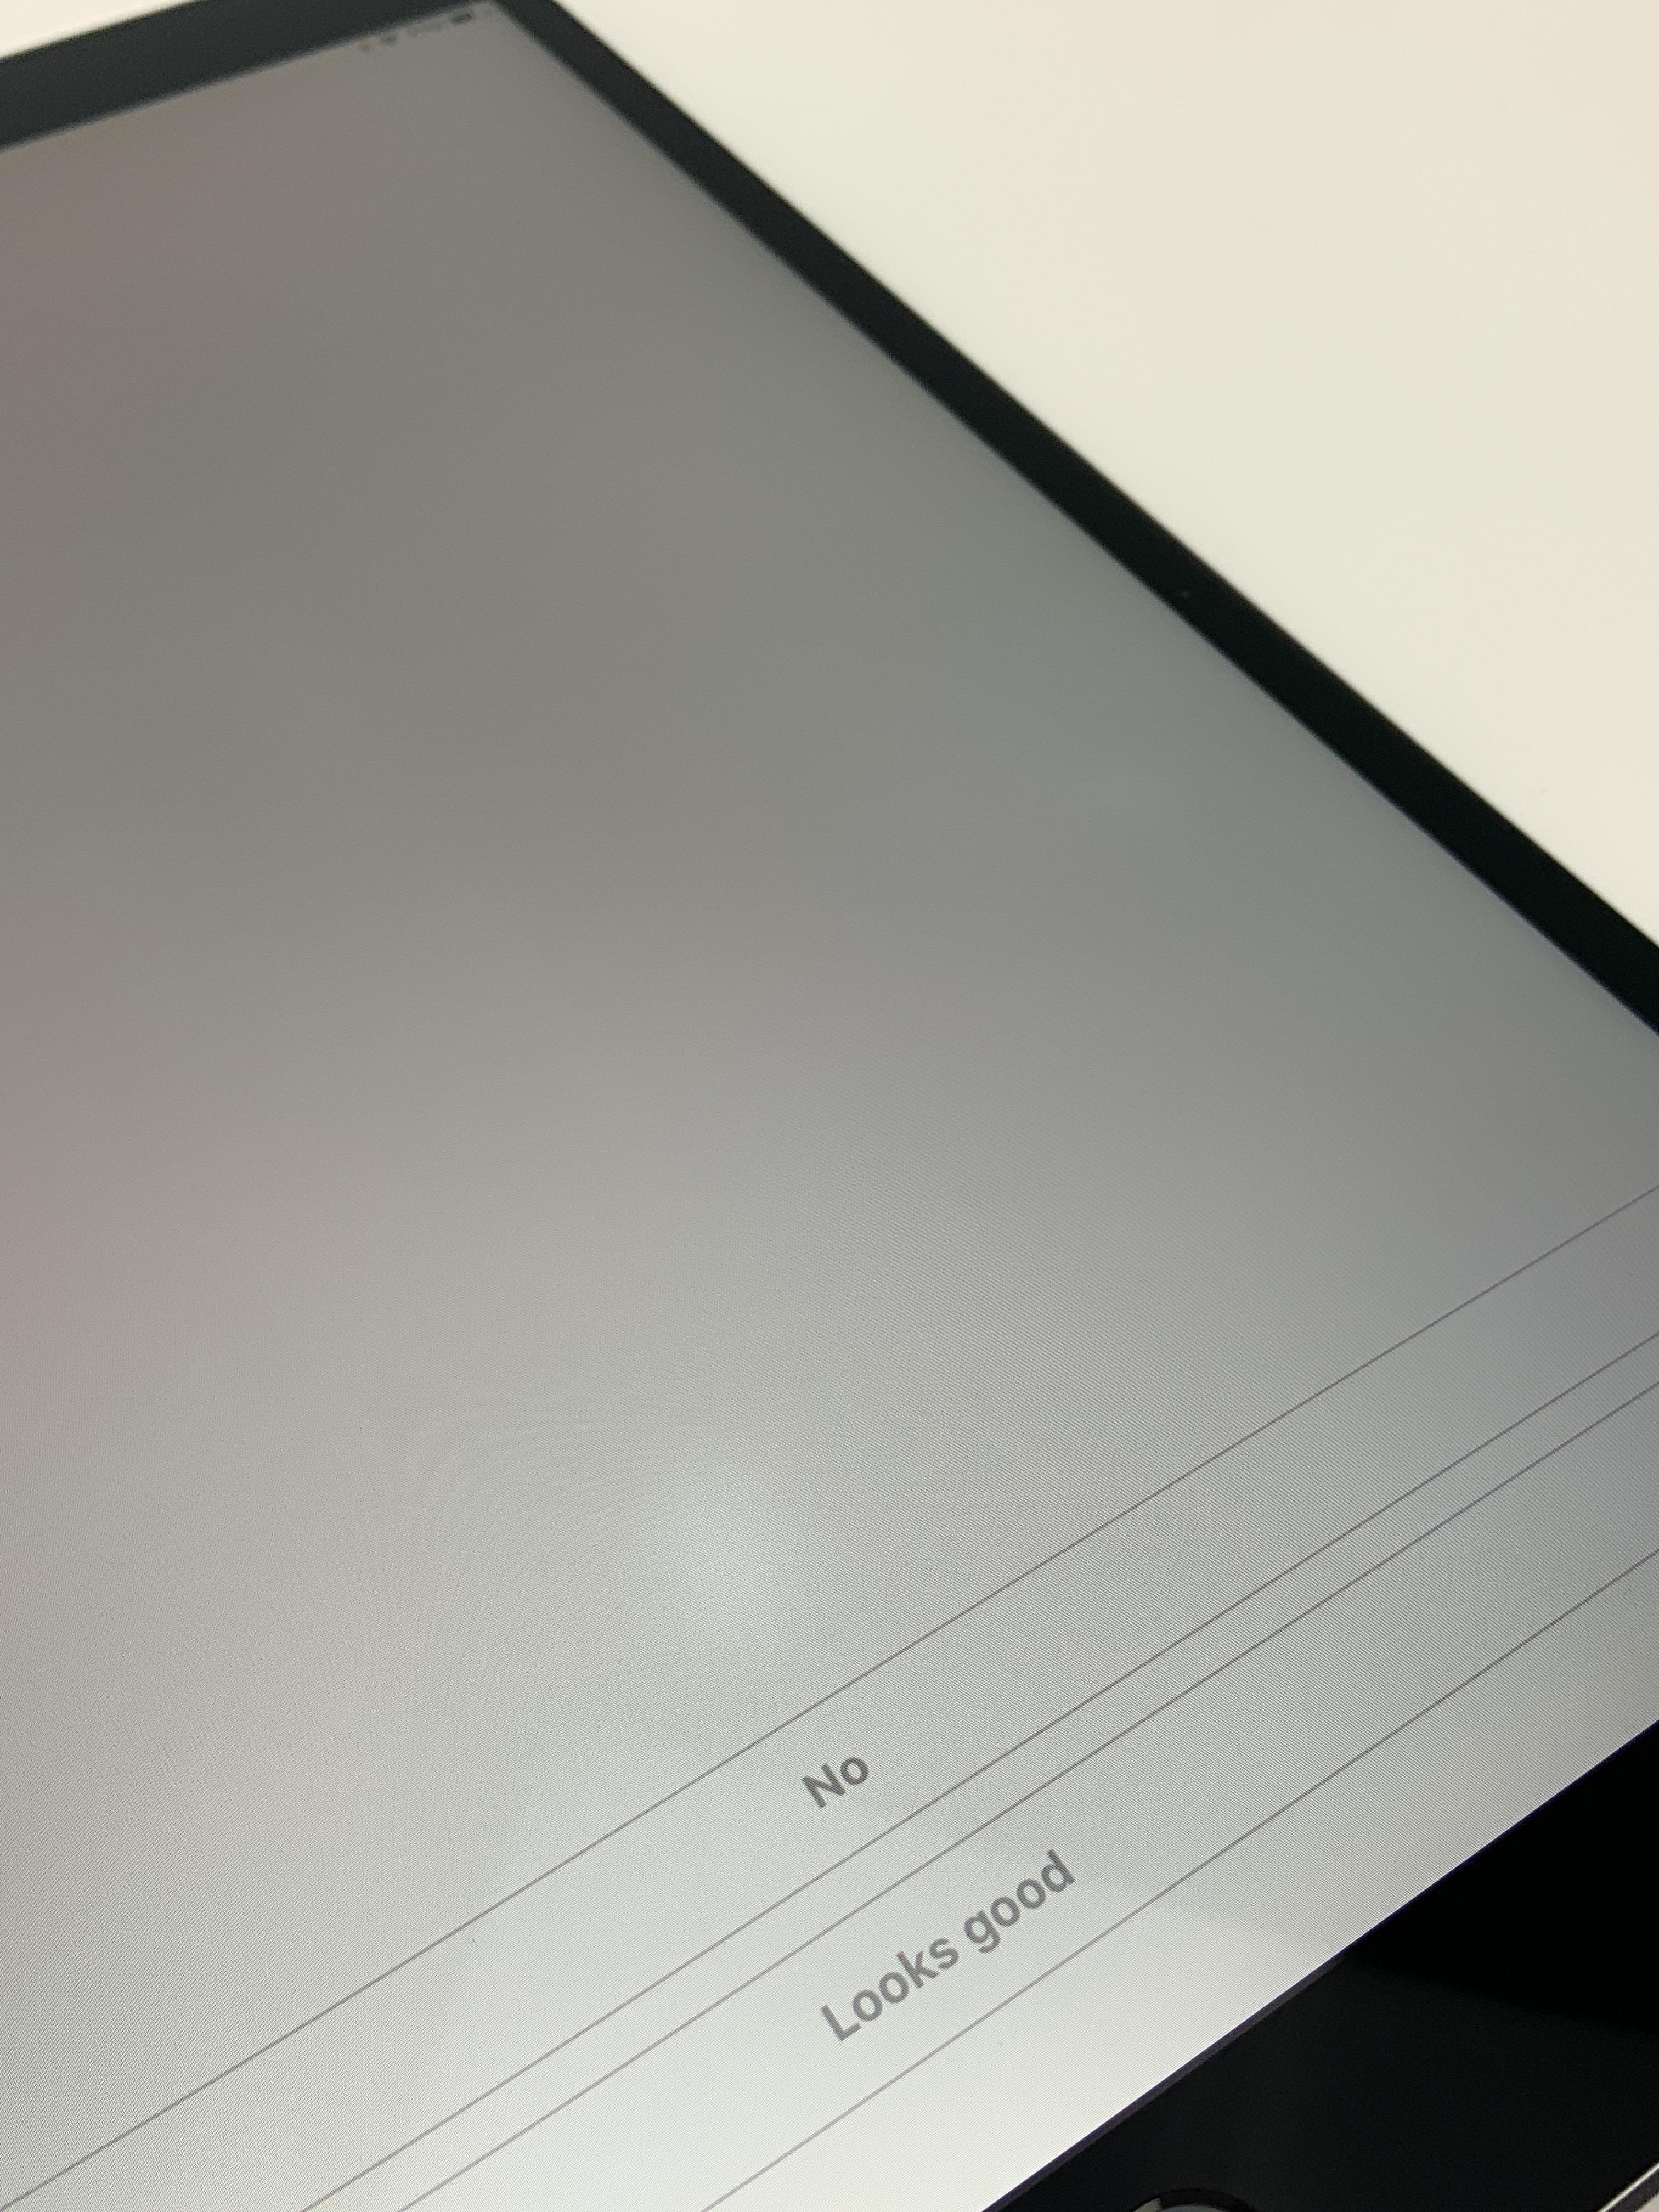 iPad Pro 10.5" Wi-Fi + Cellular 256GB, 256GB, Space Gray, obraz 4